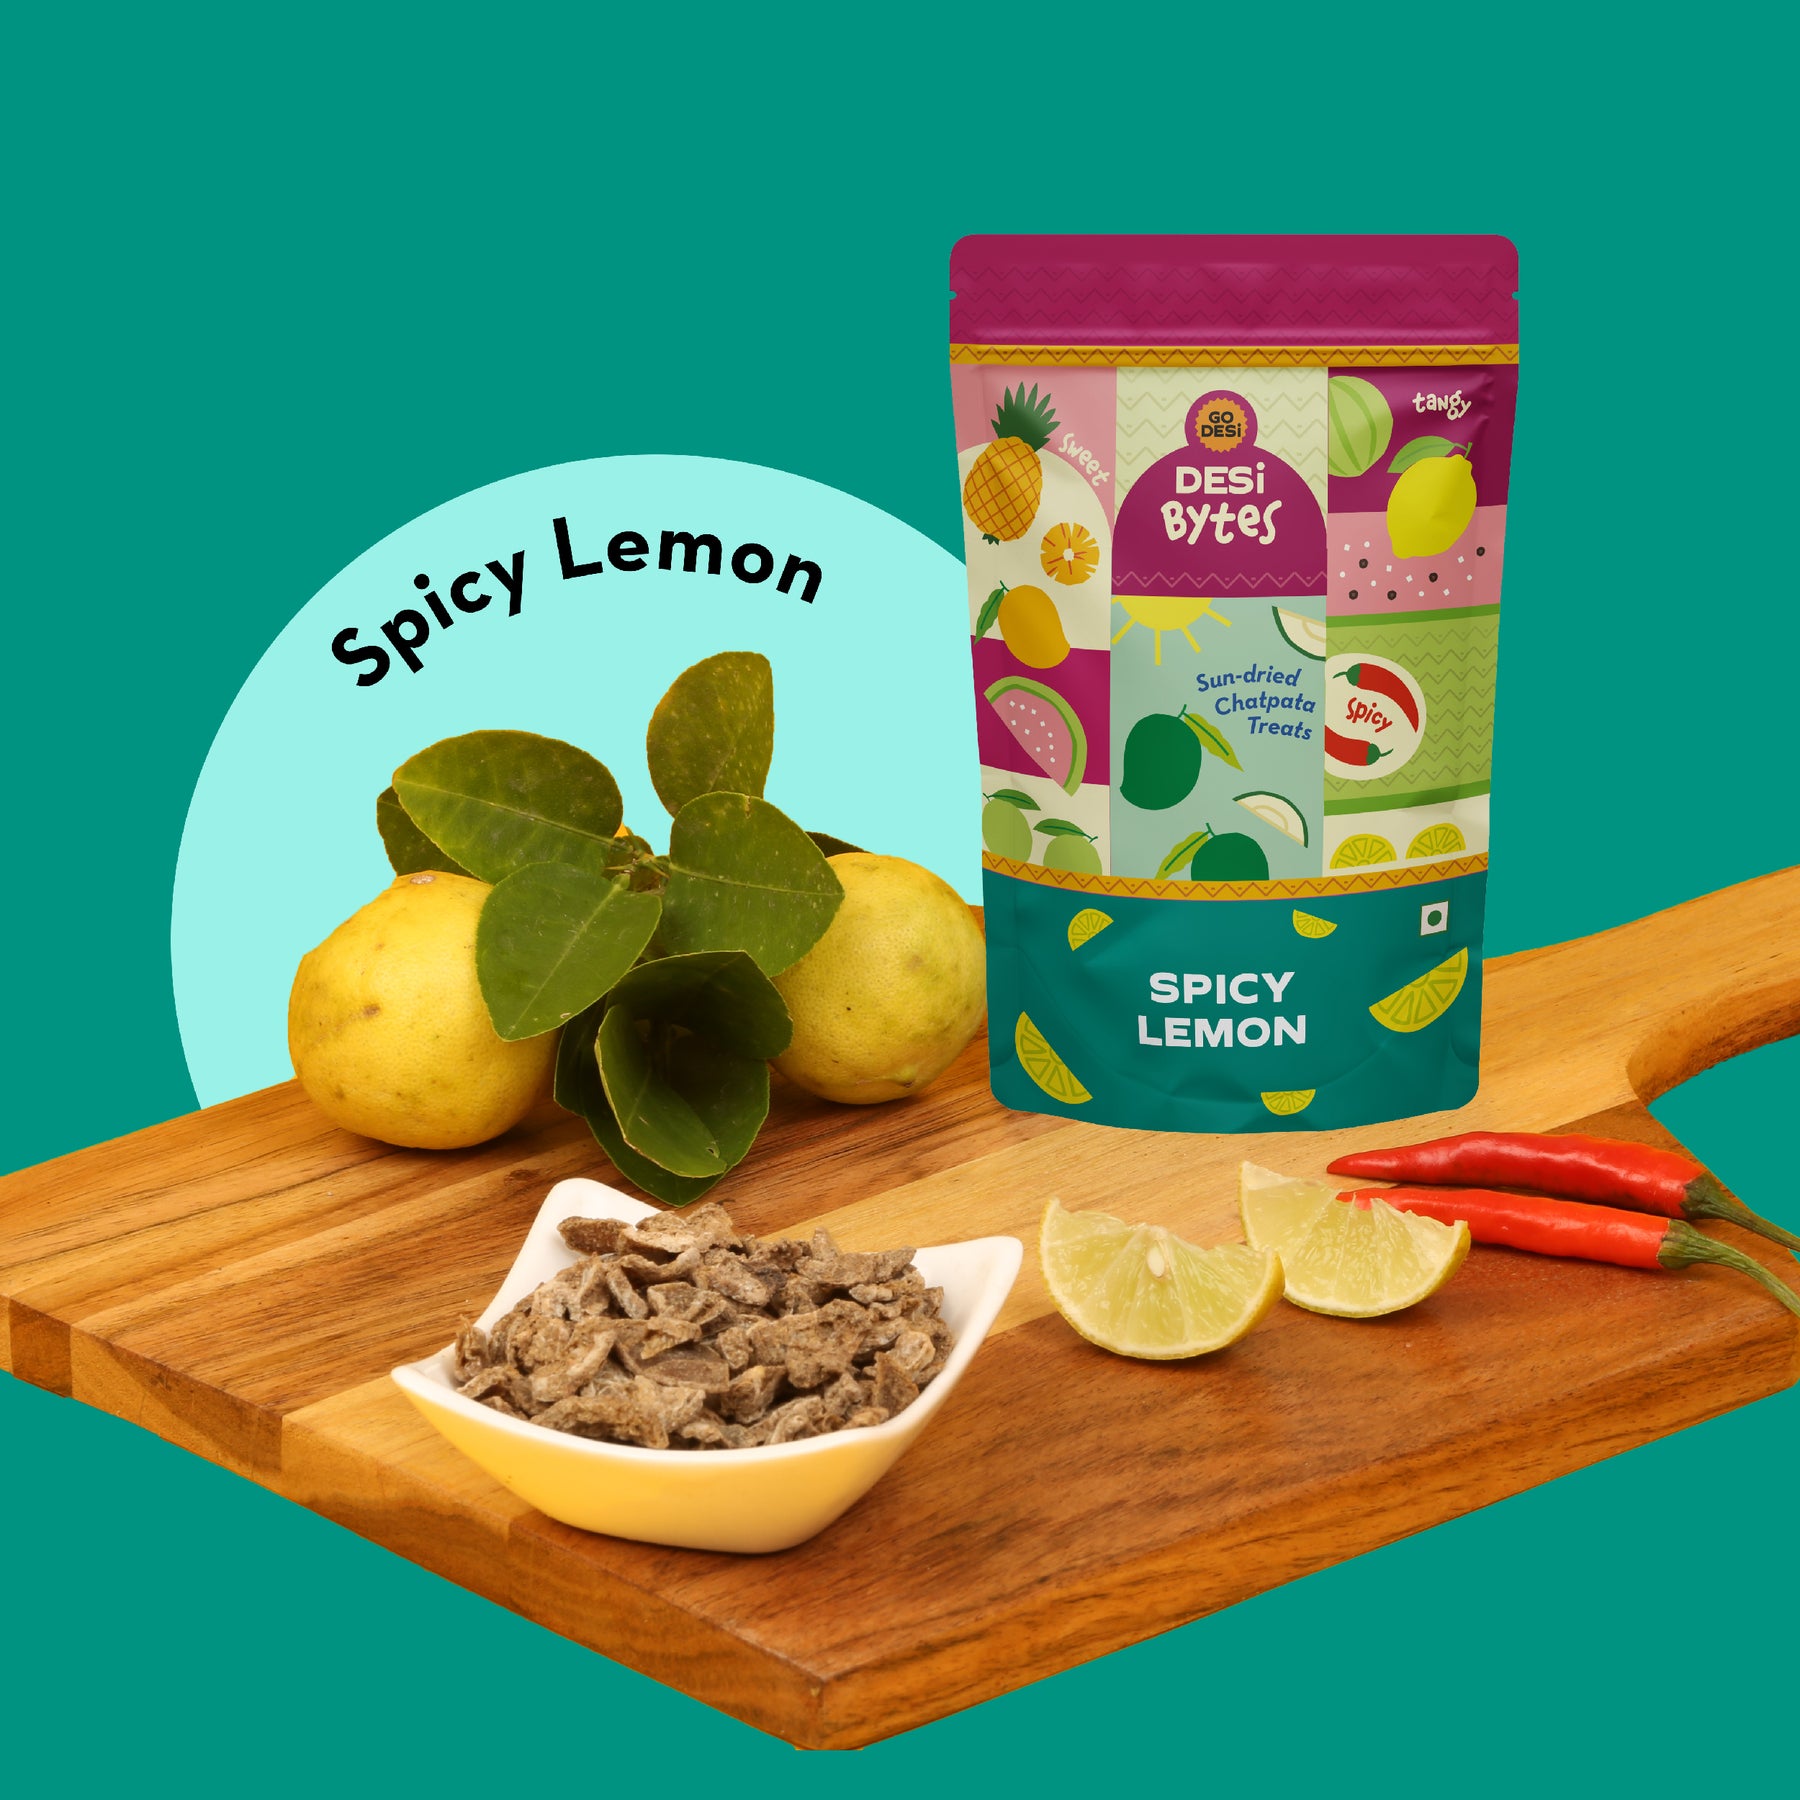 DESi Chaat - Spicy Dried Lemon (Pack of 10)